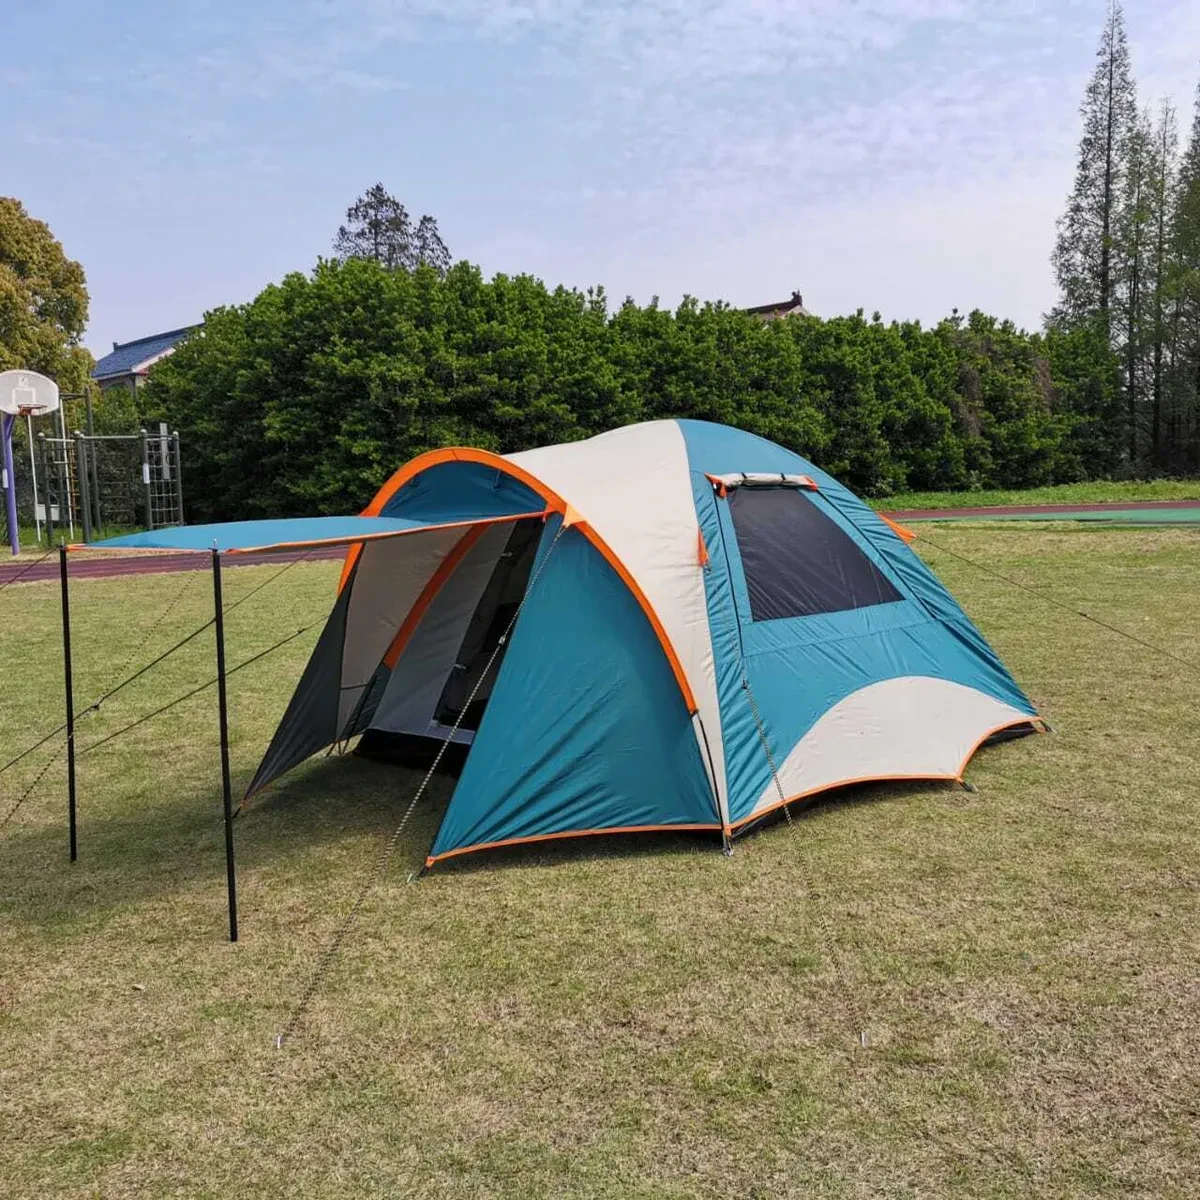 4-хместная туристическая палатка MirCamping JWS-017 с тамбуром-навесом, 300х220х150, фото 1